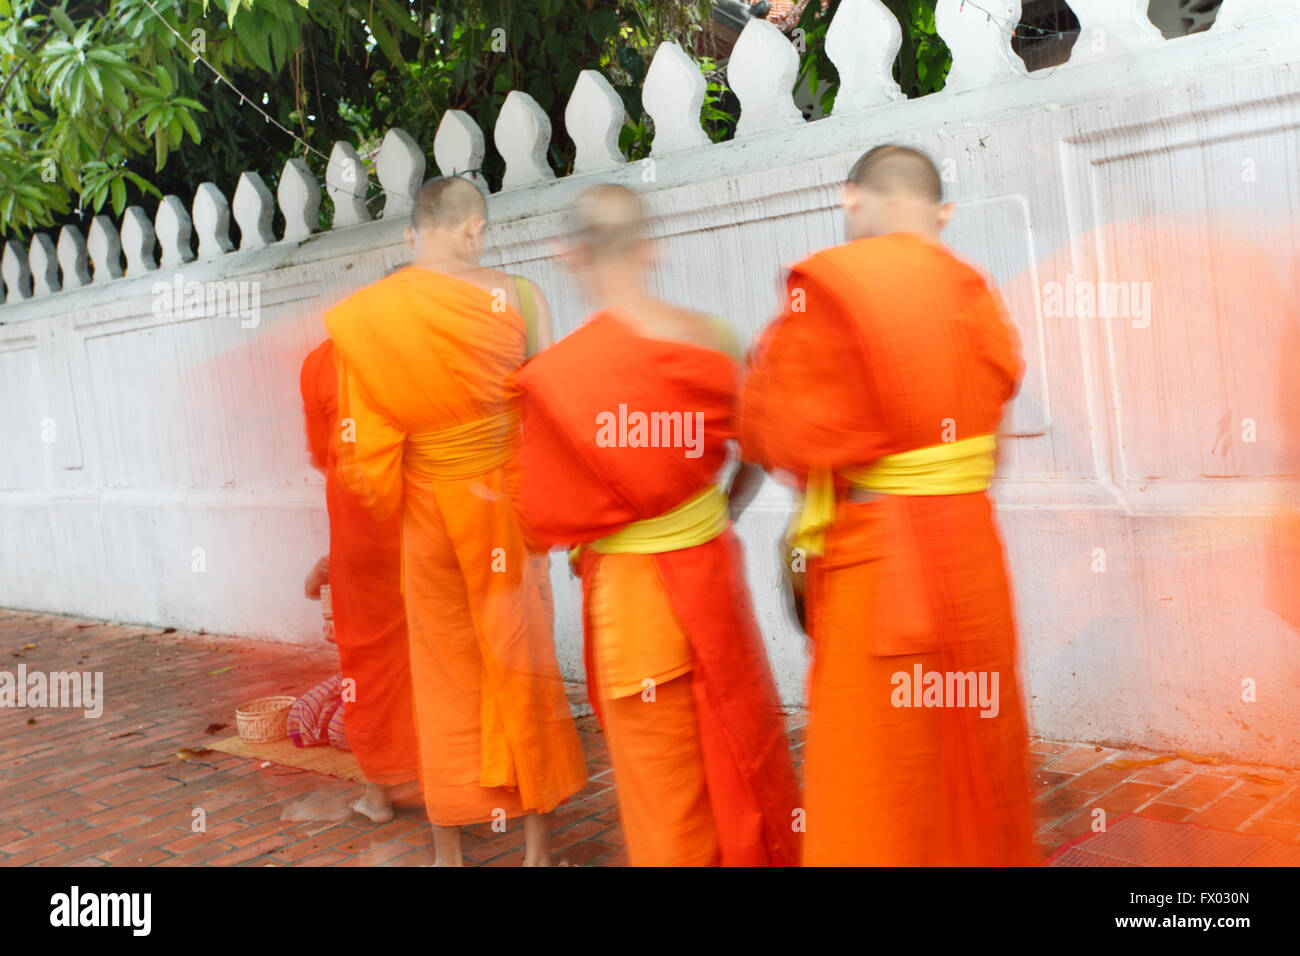 La República Democrática Popular Lao, Luang Prabang - 9 de mayo: La gente dar limosnas a los monjes budistas en la calle, Luang Prabang, 9 M Foto de stock